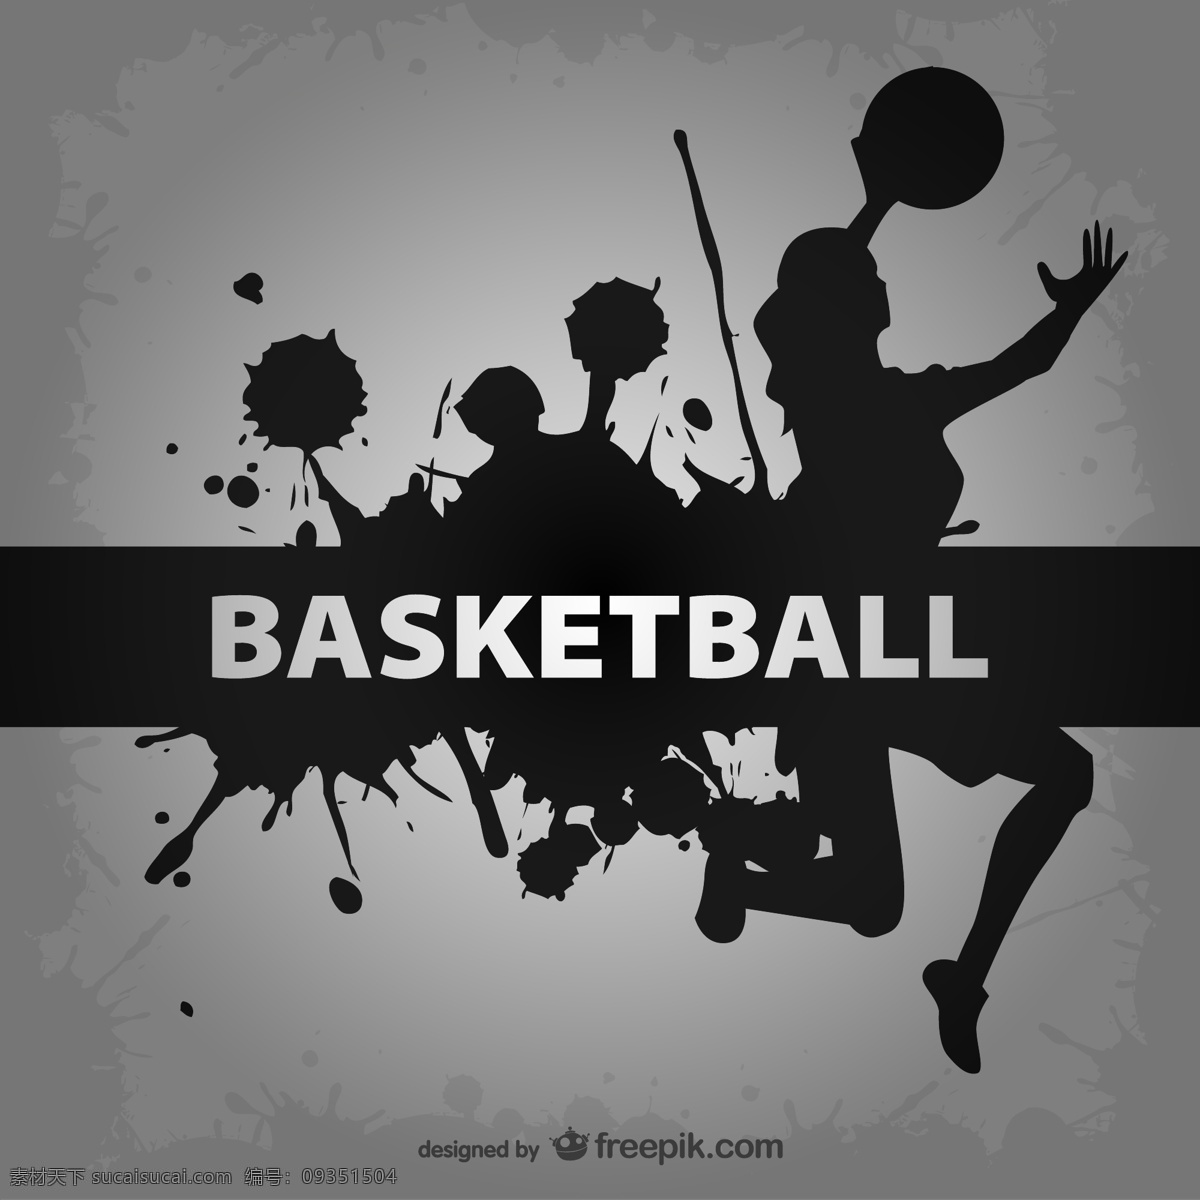 打篮球剪影 篮球运动 篮球 打篮球 运动 投篮 basketball 矢量篮球 矢量图片 矢量素材 其他矢量 矢量